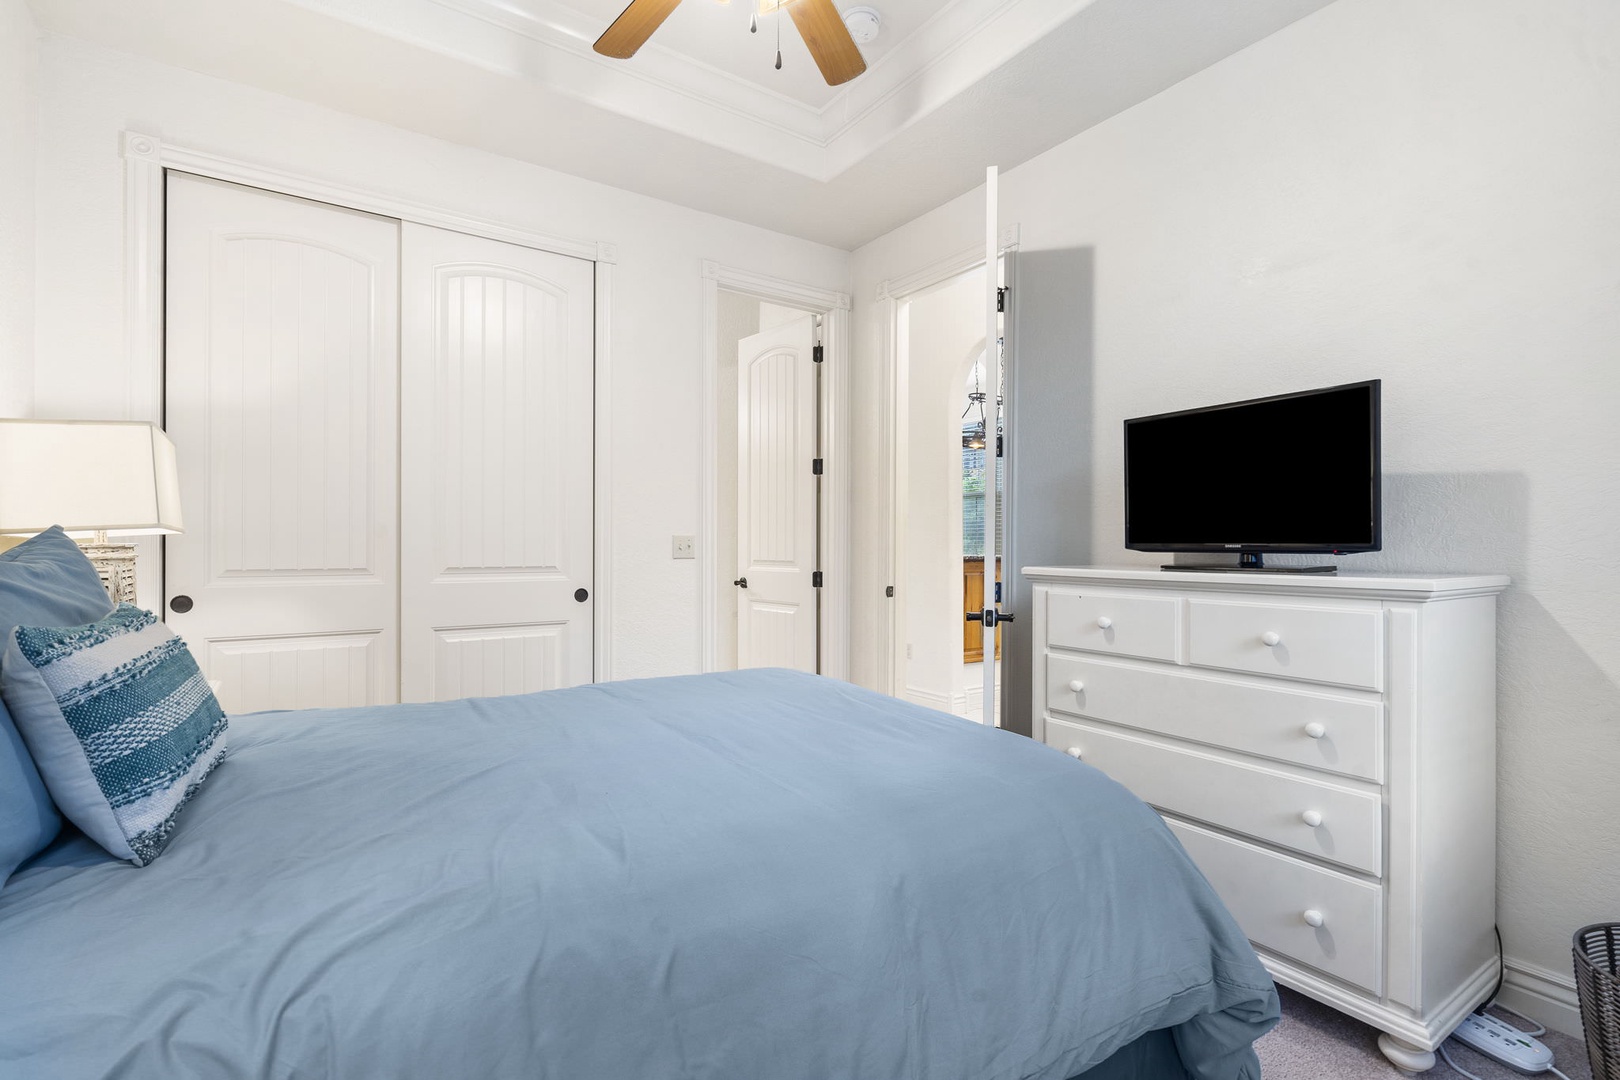 The queen suite offers a private en suite, ceiling fan, & Smart TV